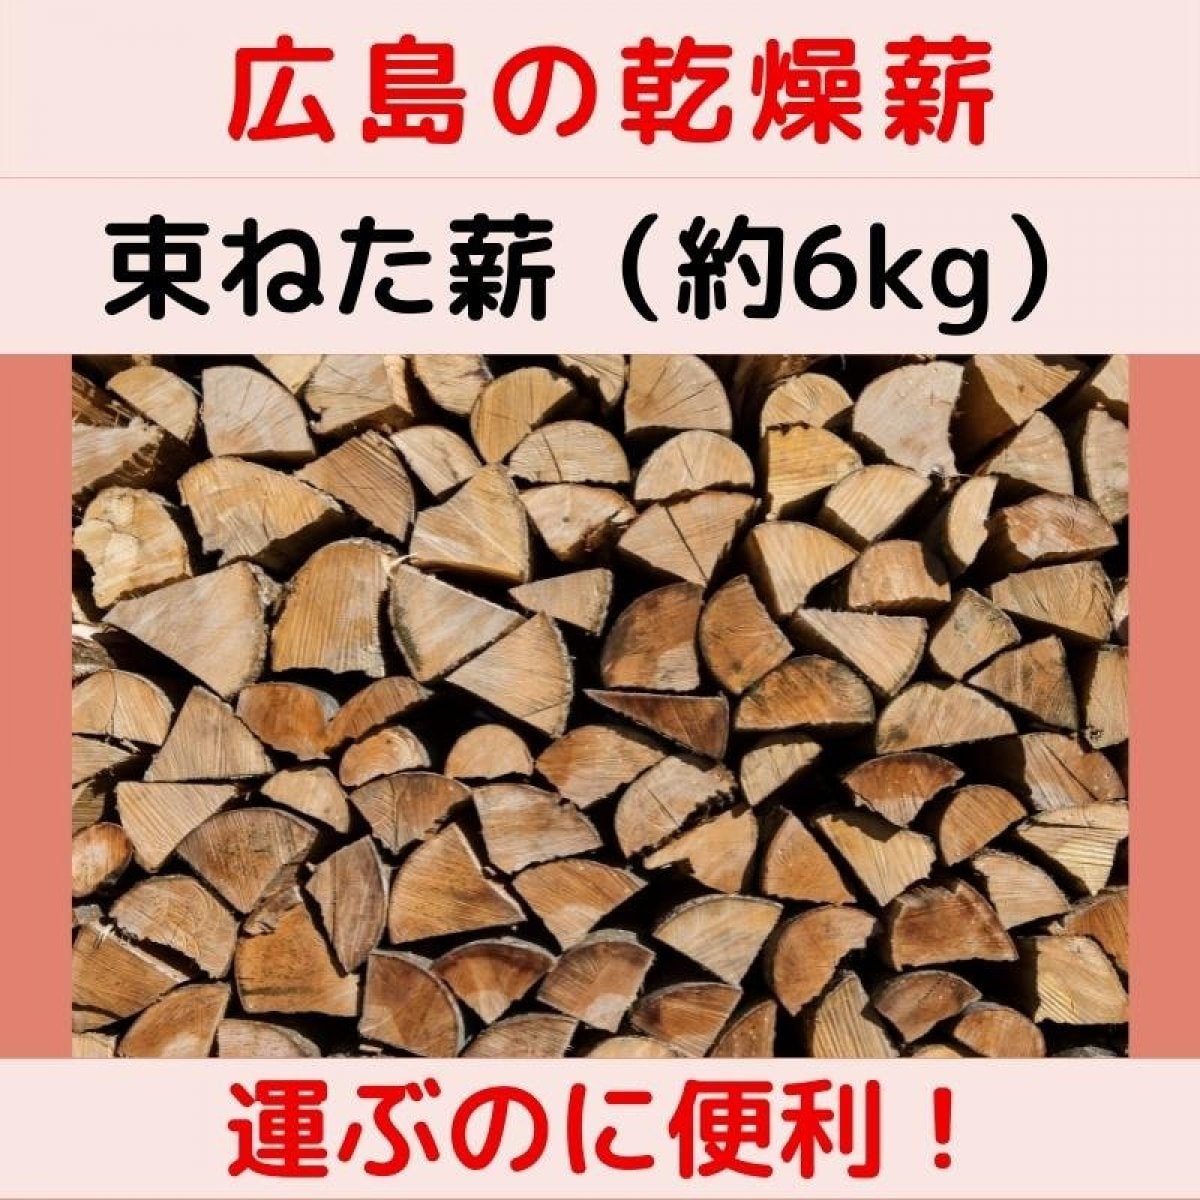 【島根県のお客様限定】薪120束お届けします。広島県内の原木の乾燥マキ。